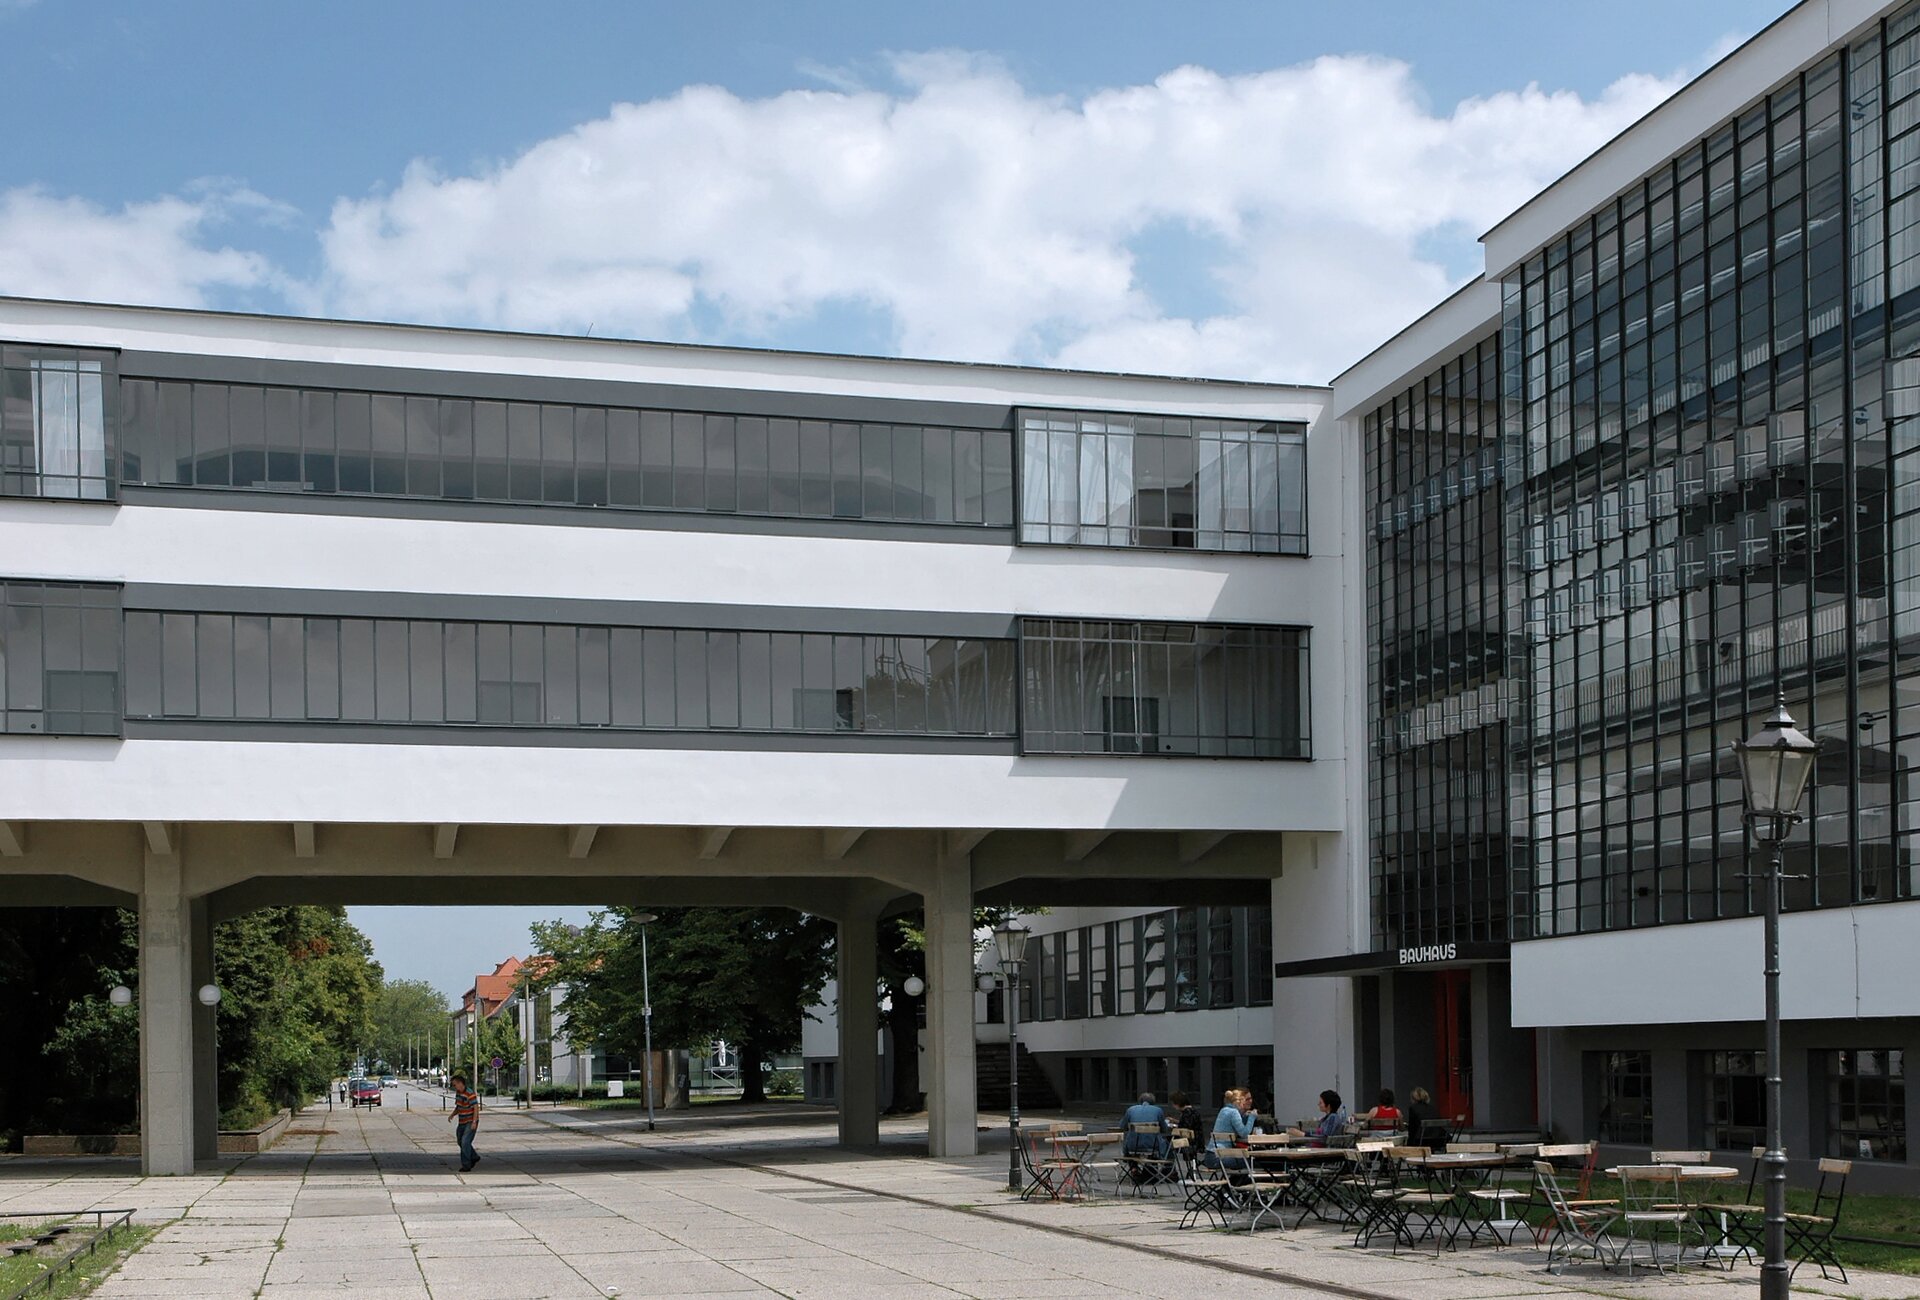 Modernistyczny budynek w Dessau Źródło: Modernistyczny budynek w Dessau, Fotografia, licencja: CC BY-SA 3.0.